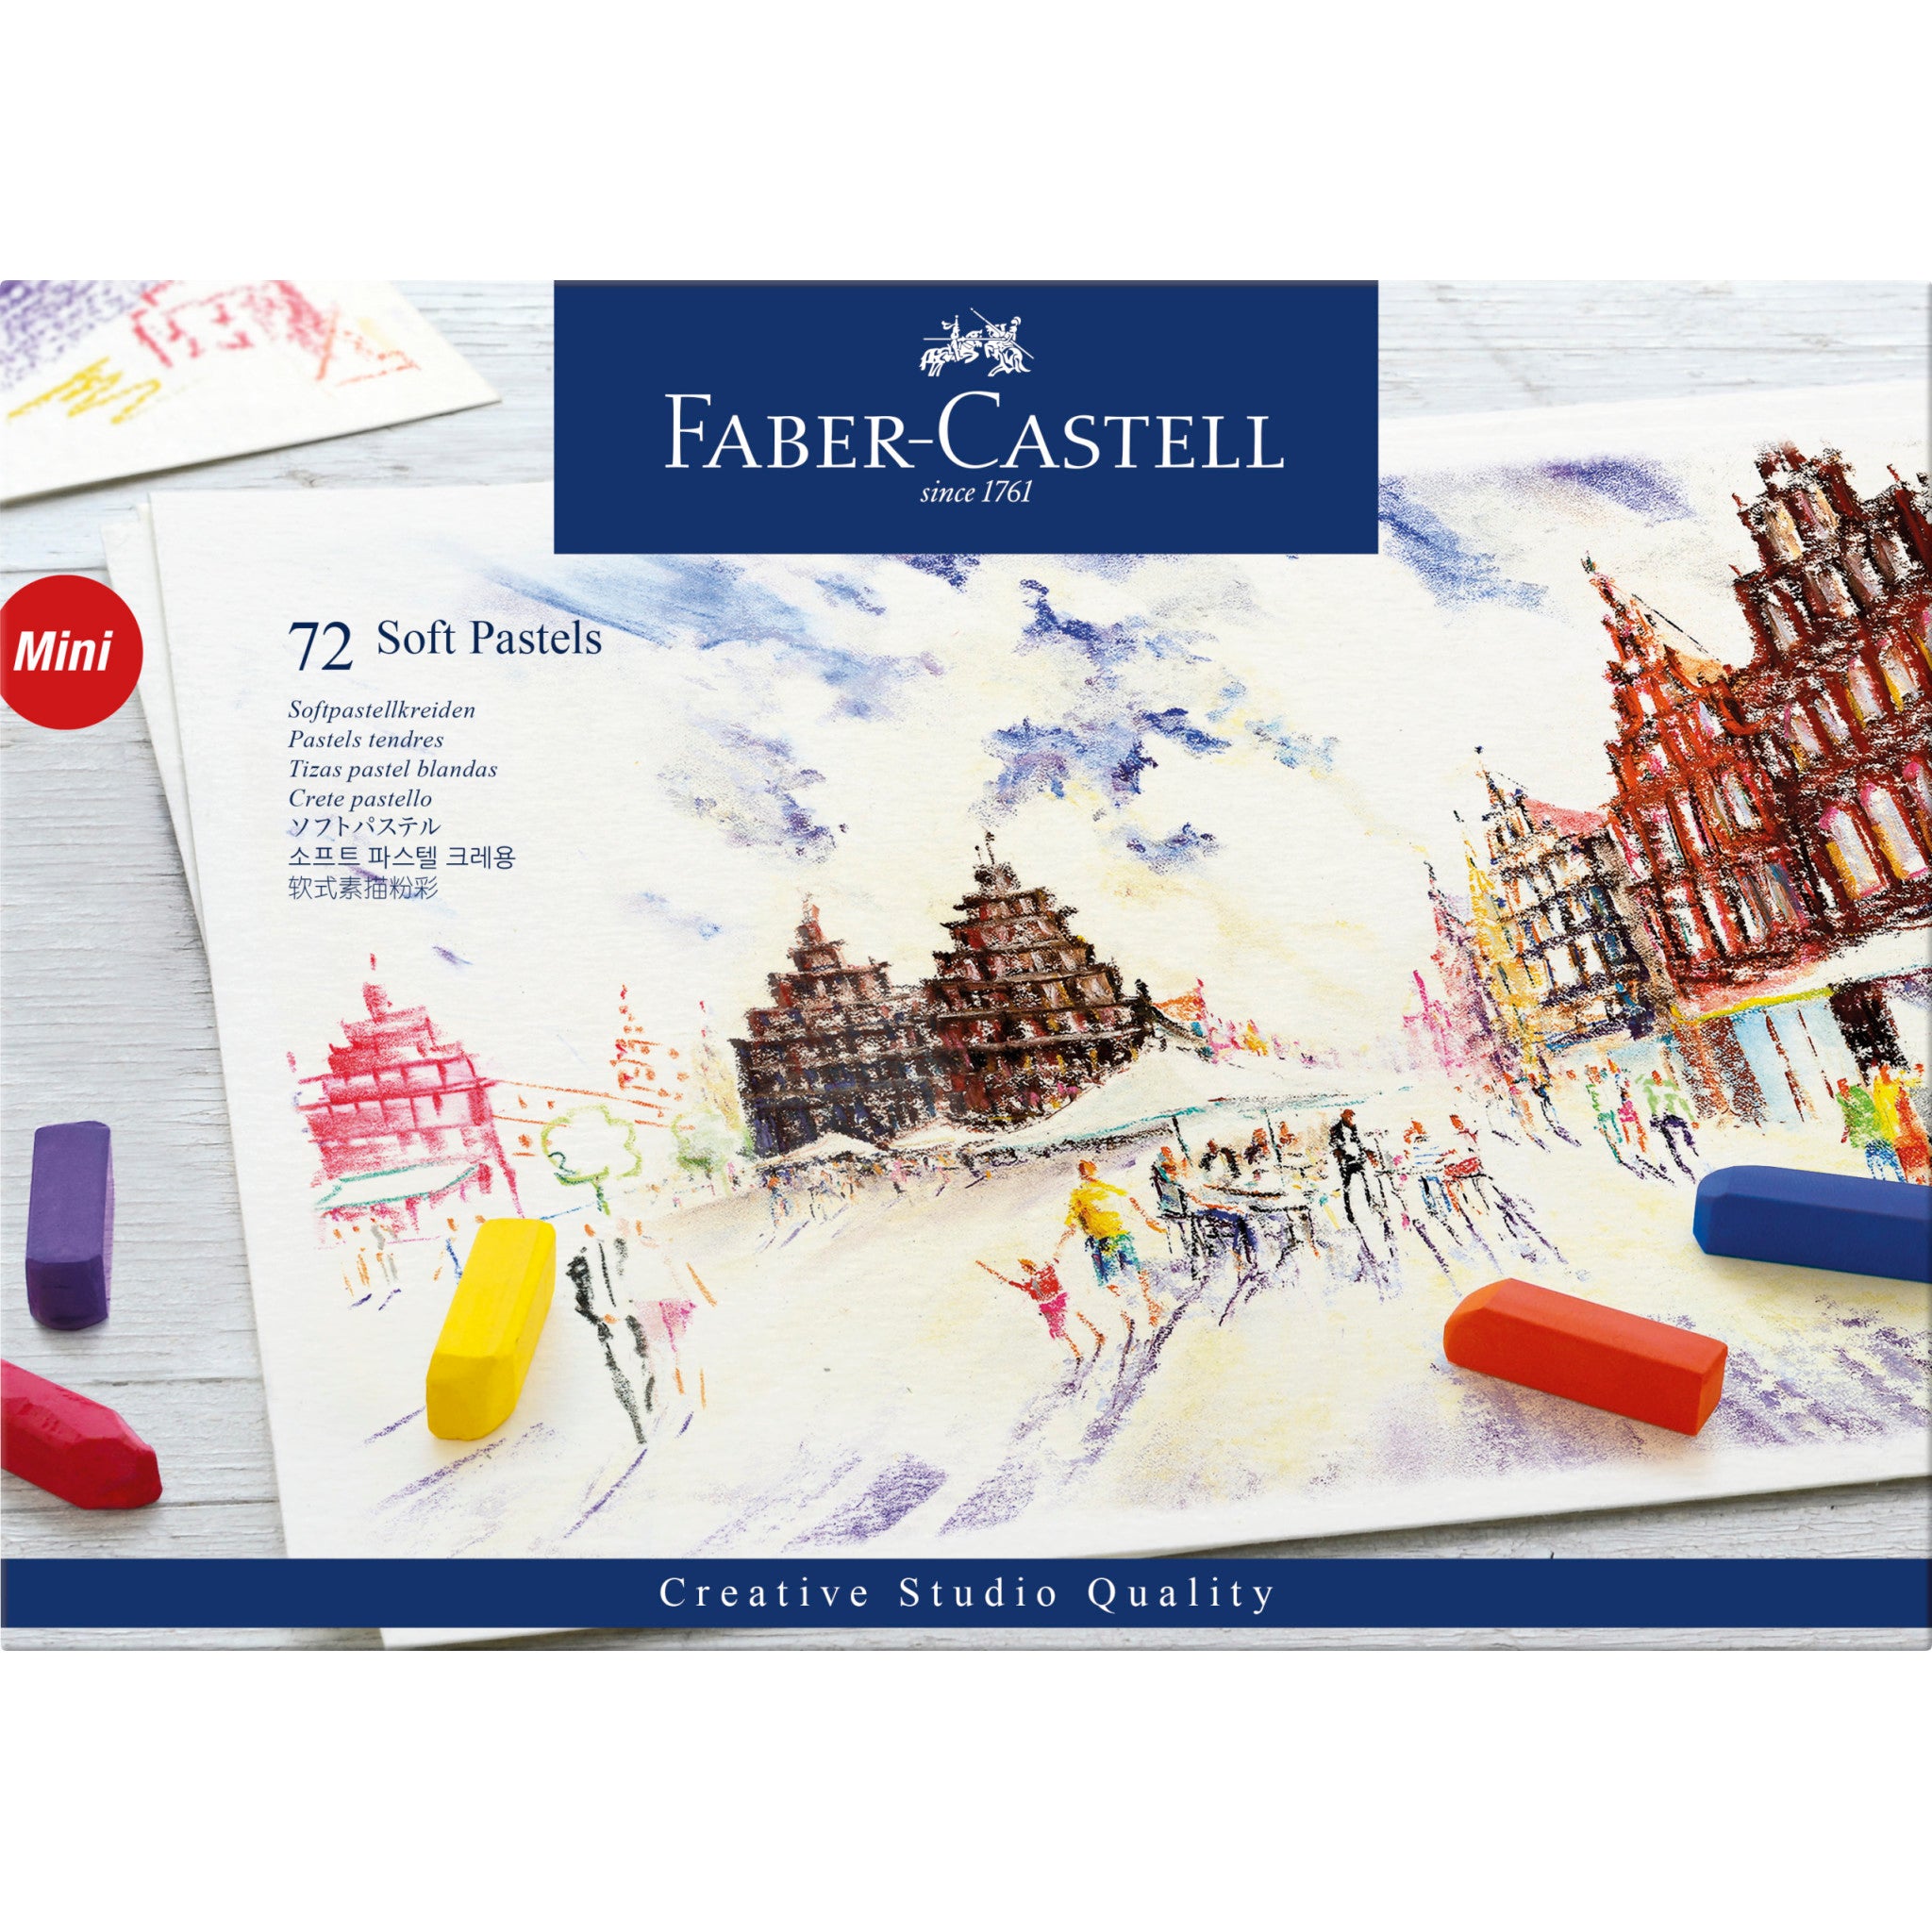 6 Packs: 12 ct. (72 total) Soft Pastels Colors by Artist's Loft®